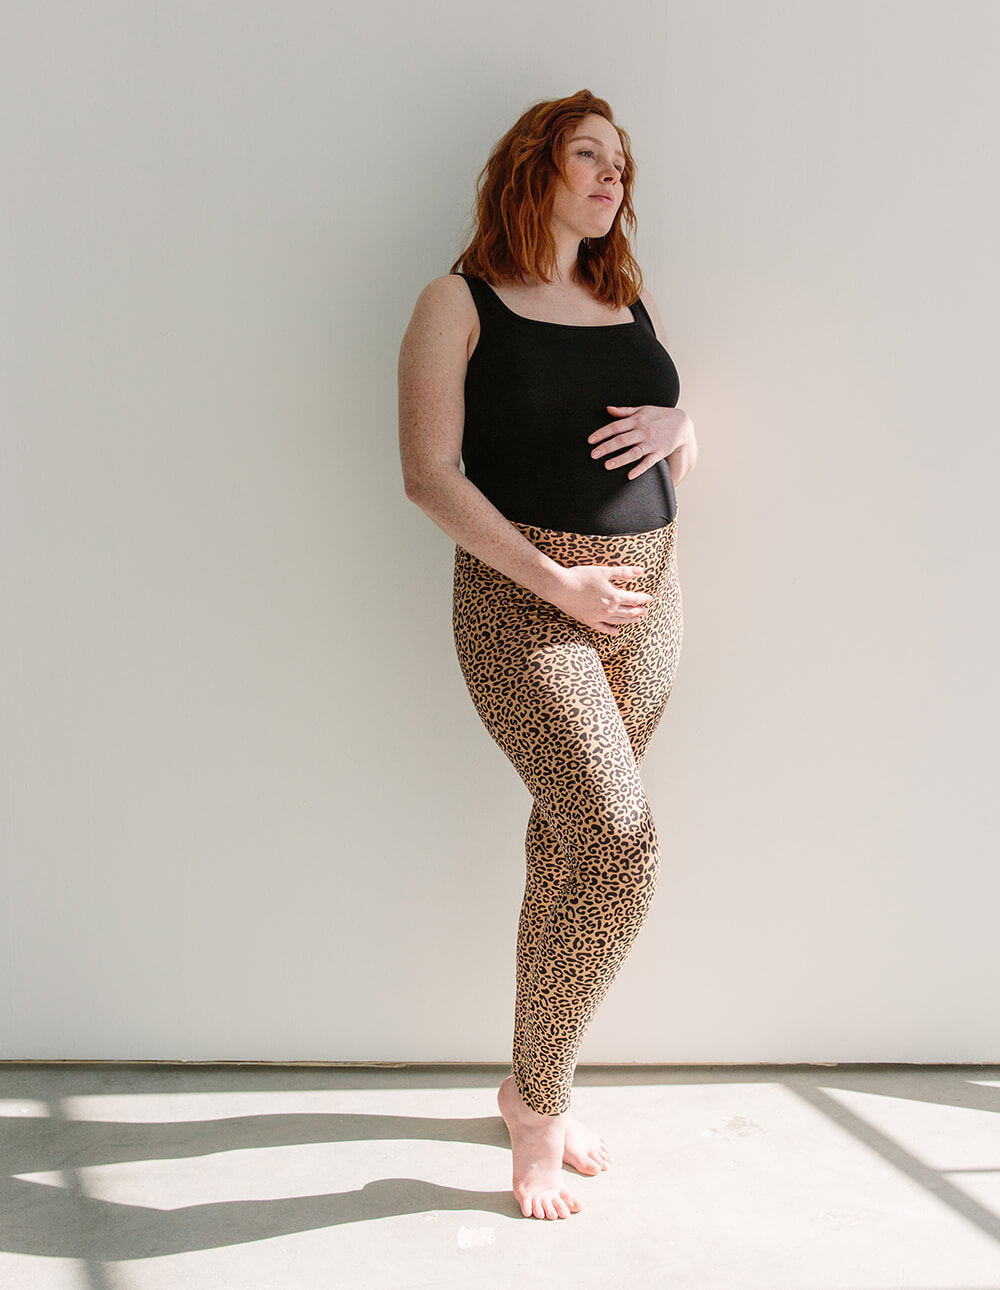 Zella Maternity Leggings Black-Large Black - $29 - From Rene